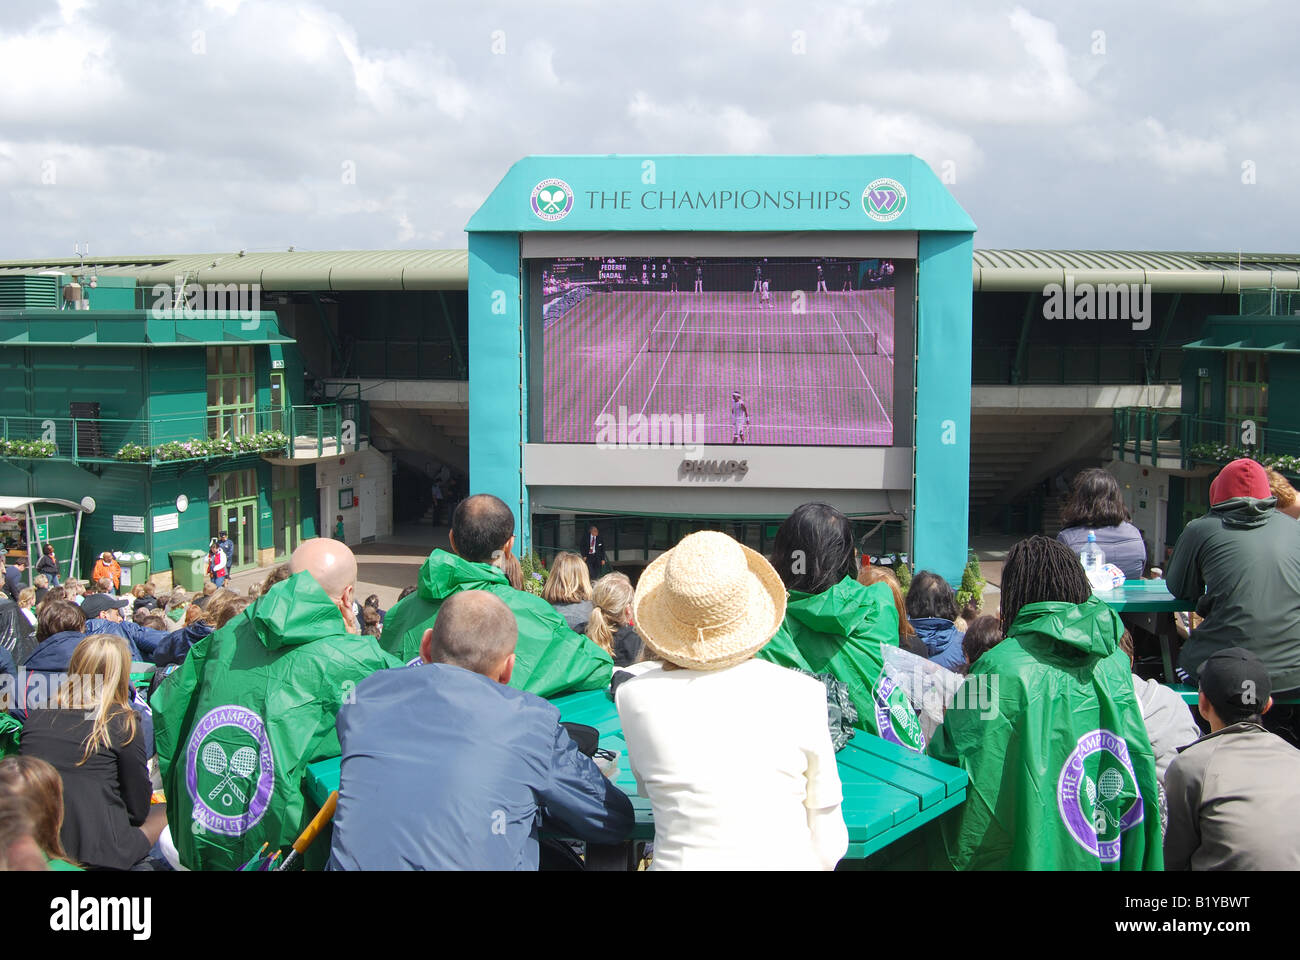 Spectateurs regardant le tennis sur Henman Hill, les Championnats, Wimbledon, Merton Borough, Greater London, Angleterre, Royaume-Uni Banque D'Images